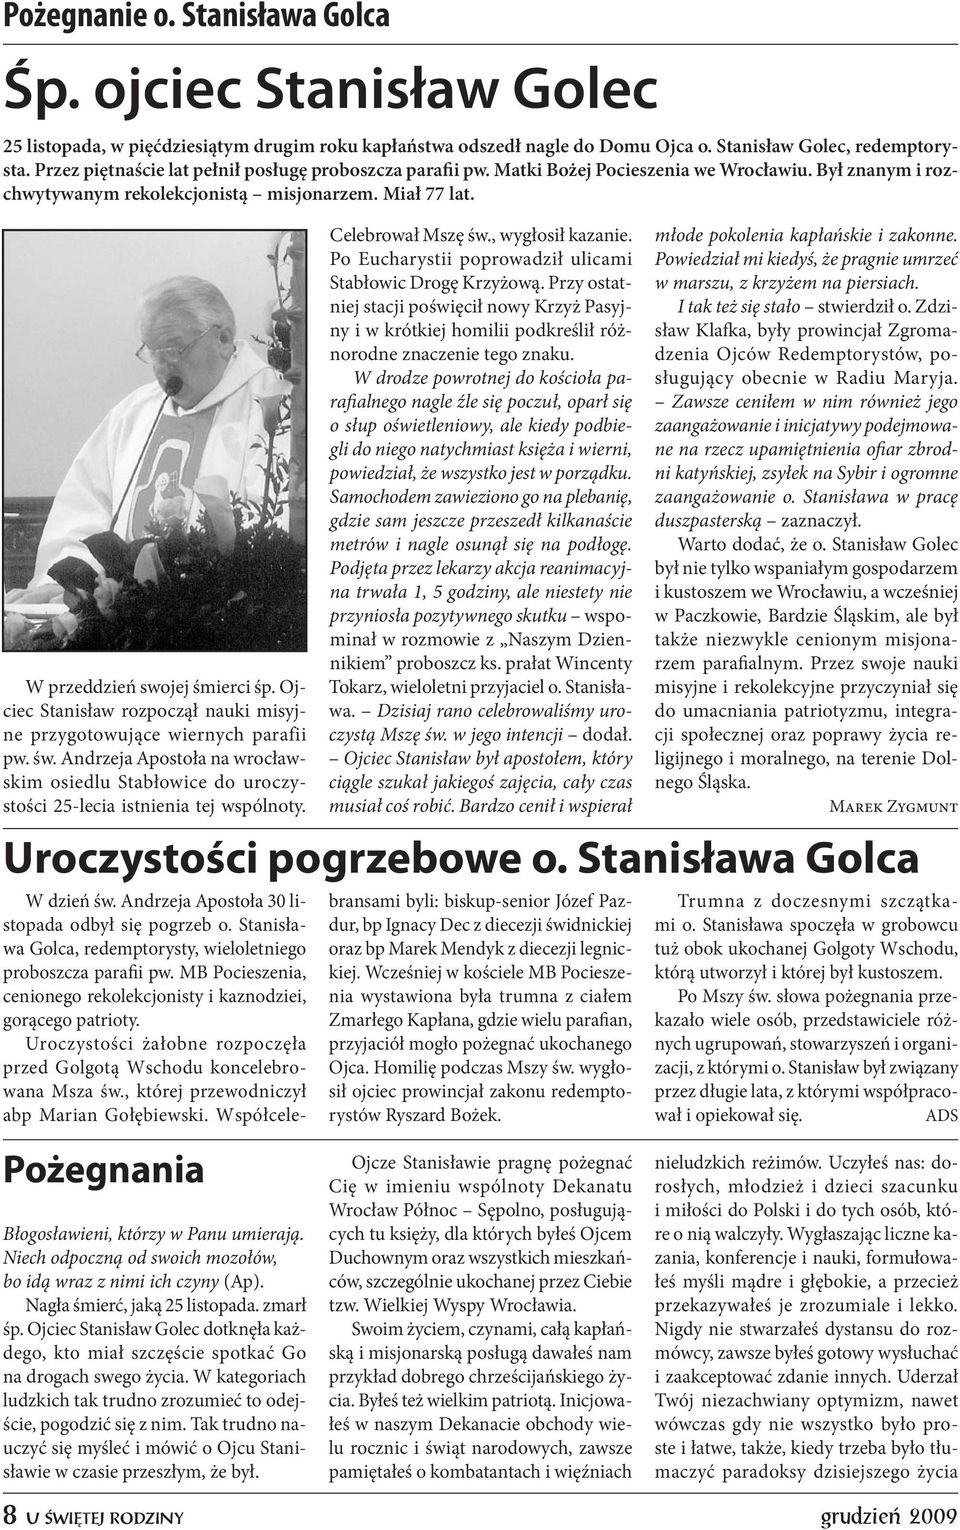 Ojciec Stanisław rozpoczął nauki misyjne przygotowujące wiernych parafii pw. św. Andrzeja Apostoła na wrocławskim osiedlu Stabłowice do uroczystości 25-lecia istnienia tej wspólnoty.